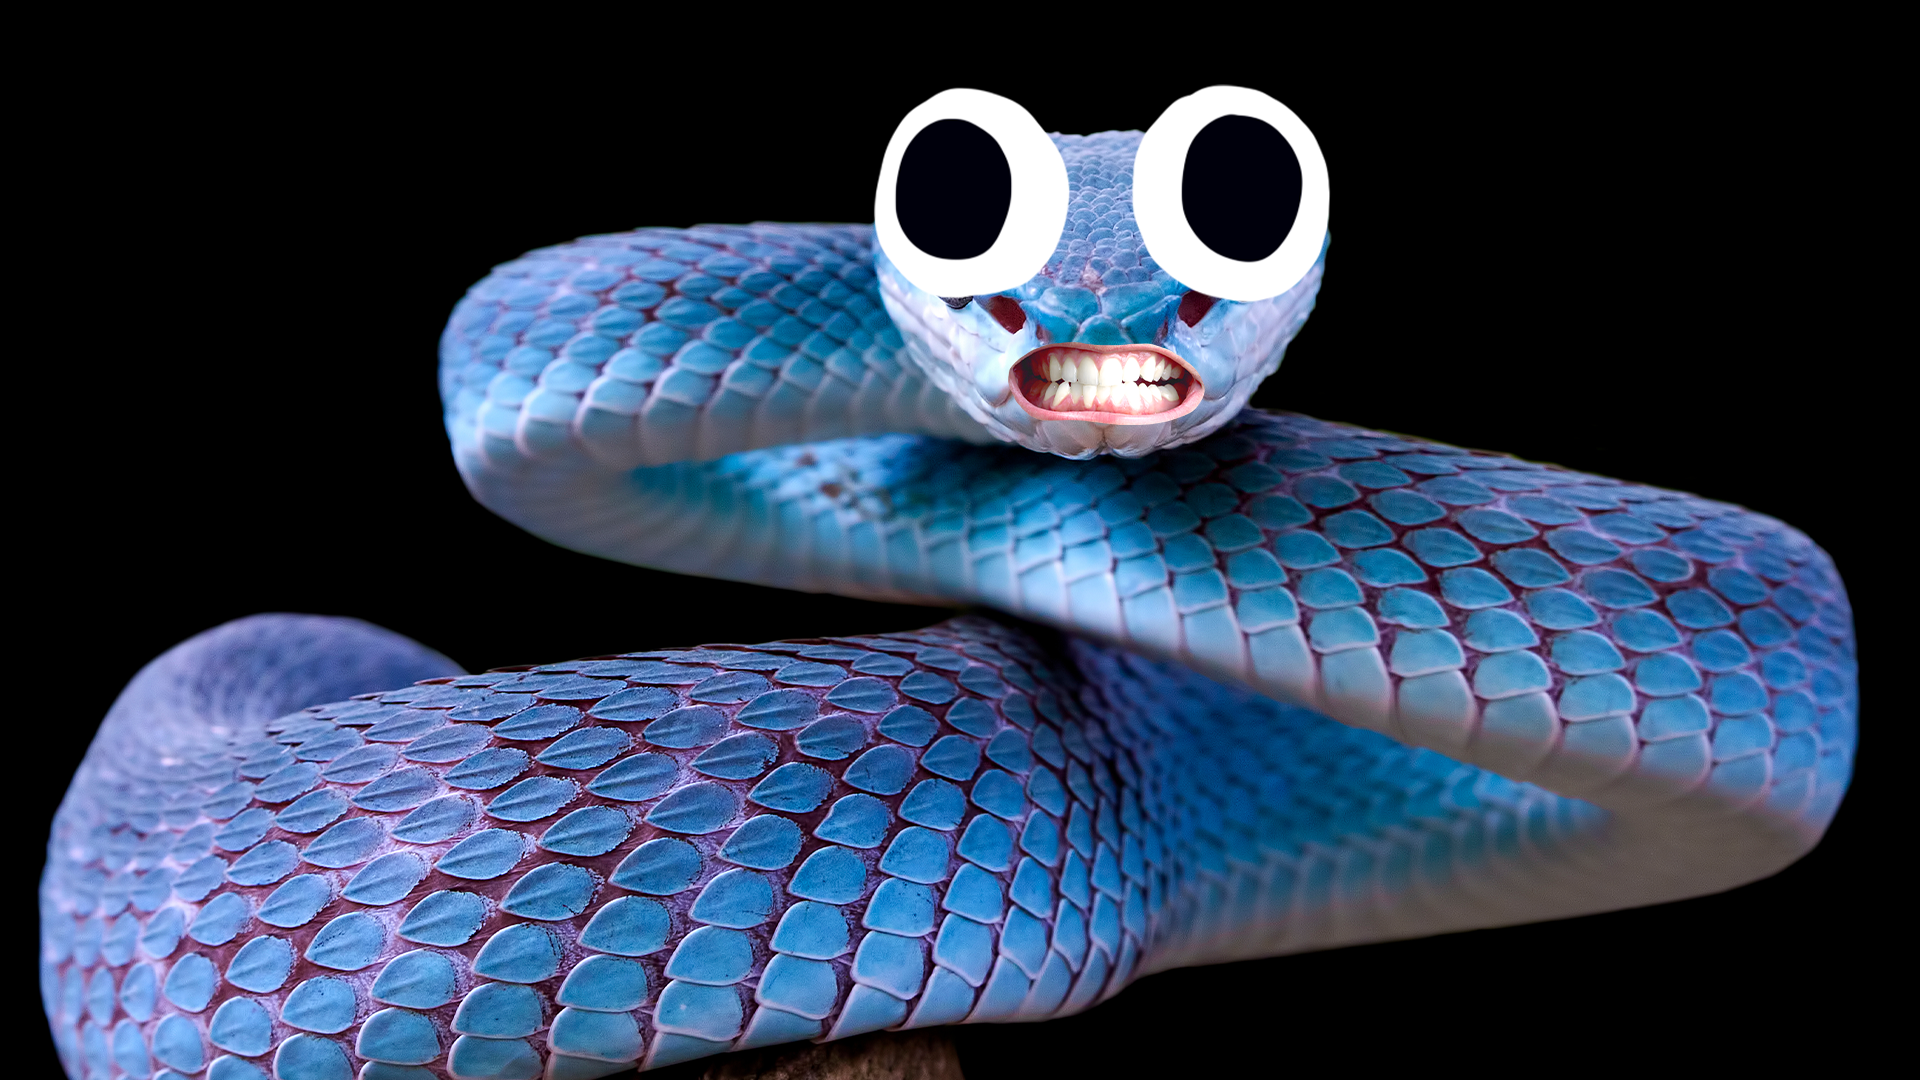 Goofy blue snake